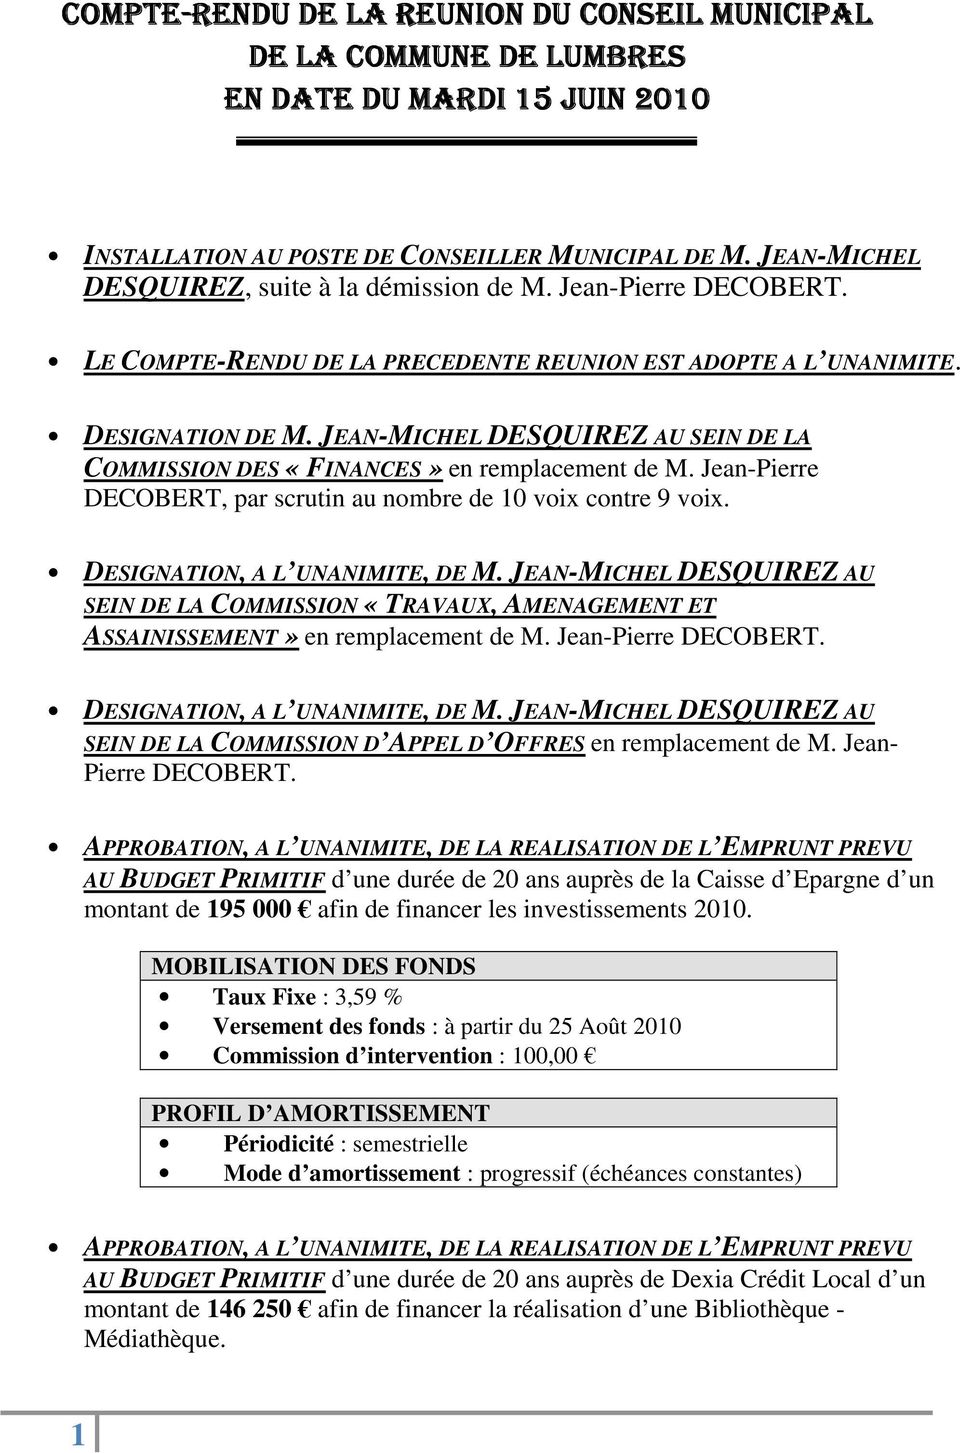 JEAN-MICHEL DESQUIREZ AU SEIN DE LA COMMISSION DES «FINANCES» en remplacement de M. Jean-Pierre DECOBERT, par scrutin au nombre de 10 voix contre 9 voix. DESIGNATION, A L UNANIMITE, DE M.